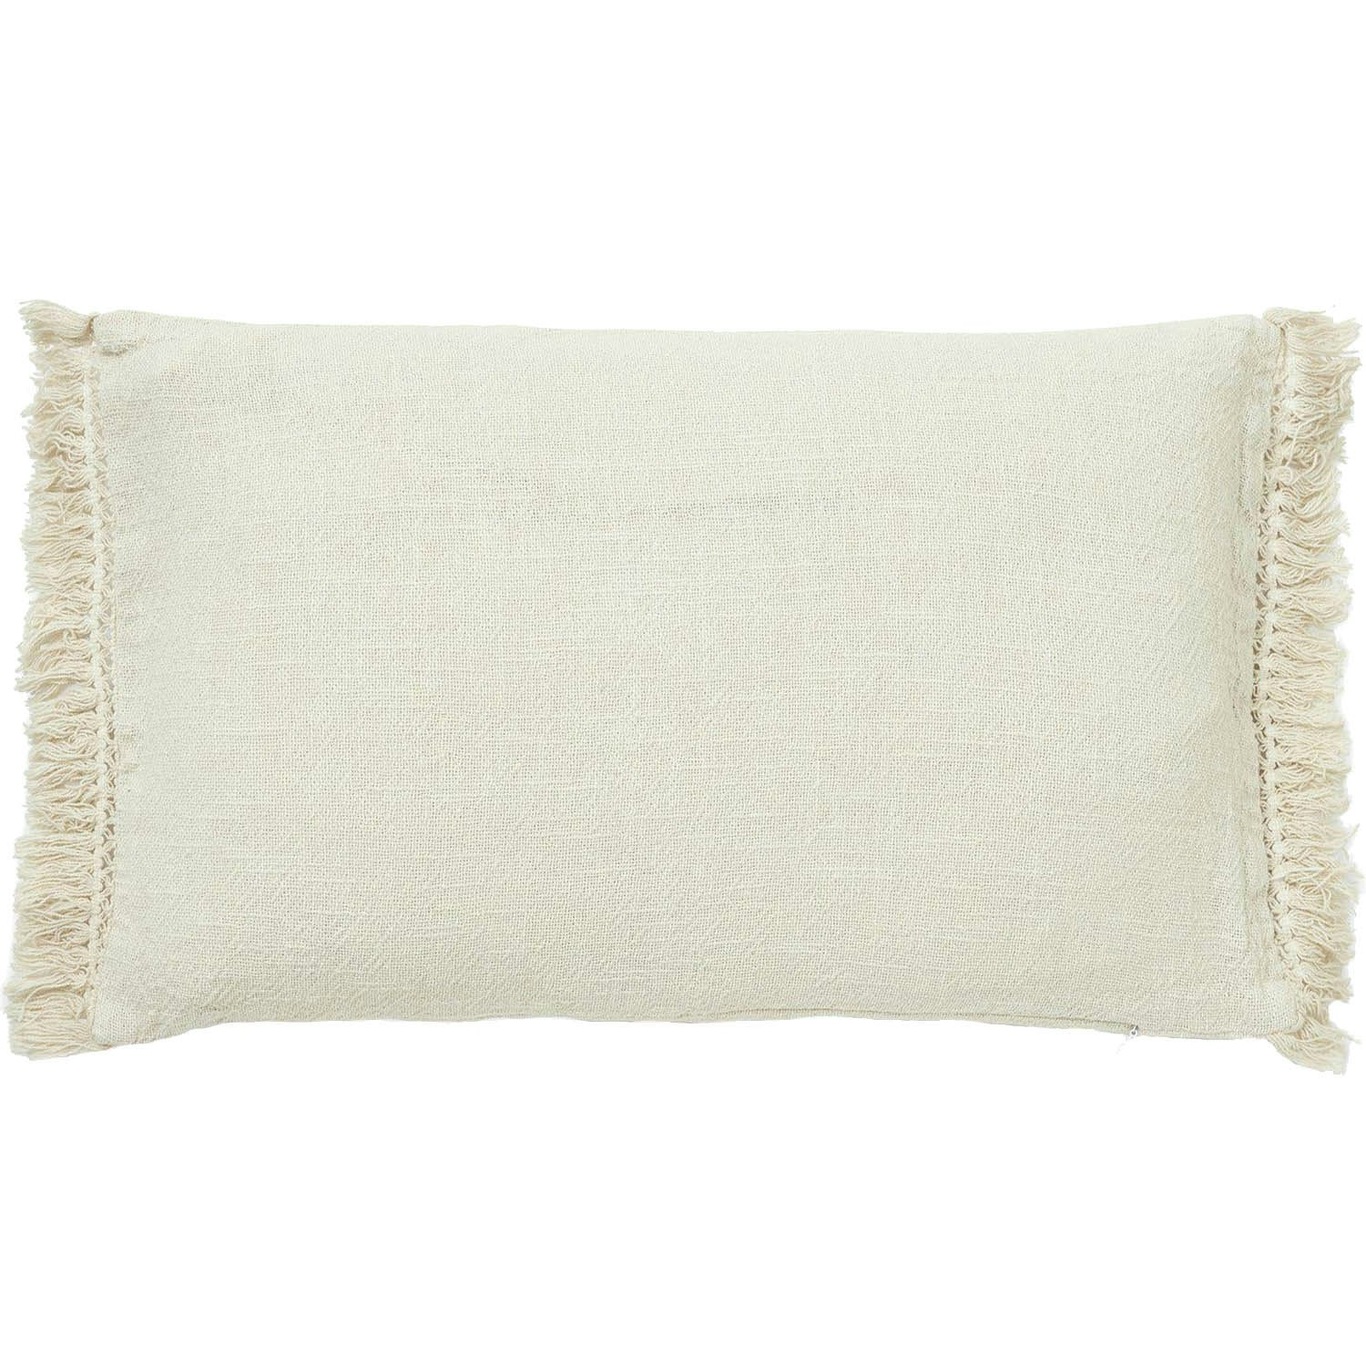 Sone Cushion Cover 30x50 cm, Off-white